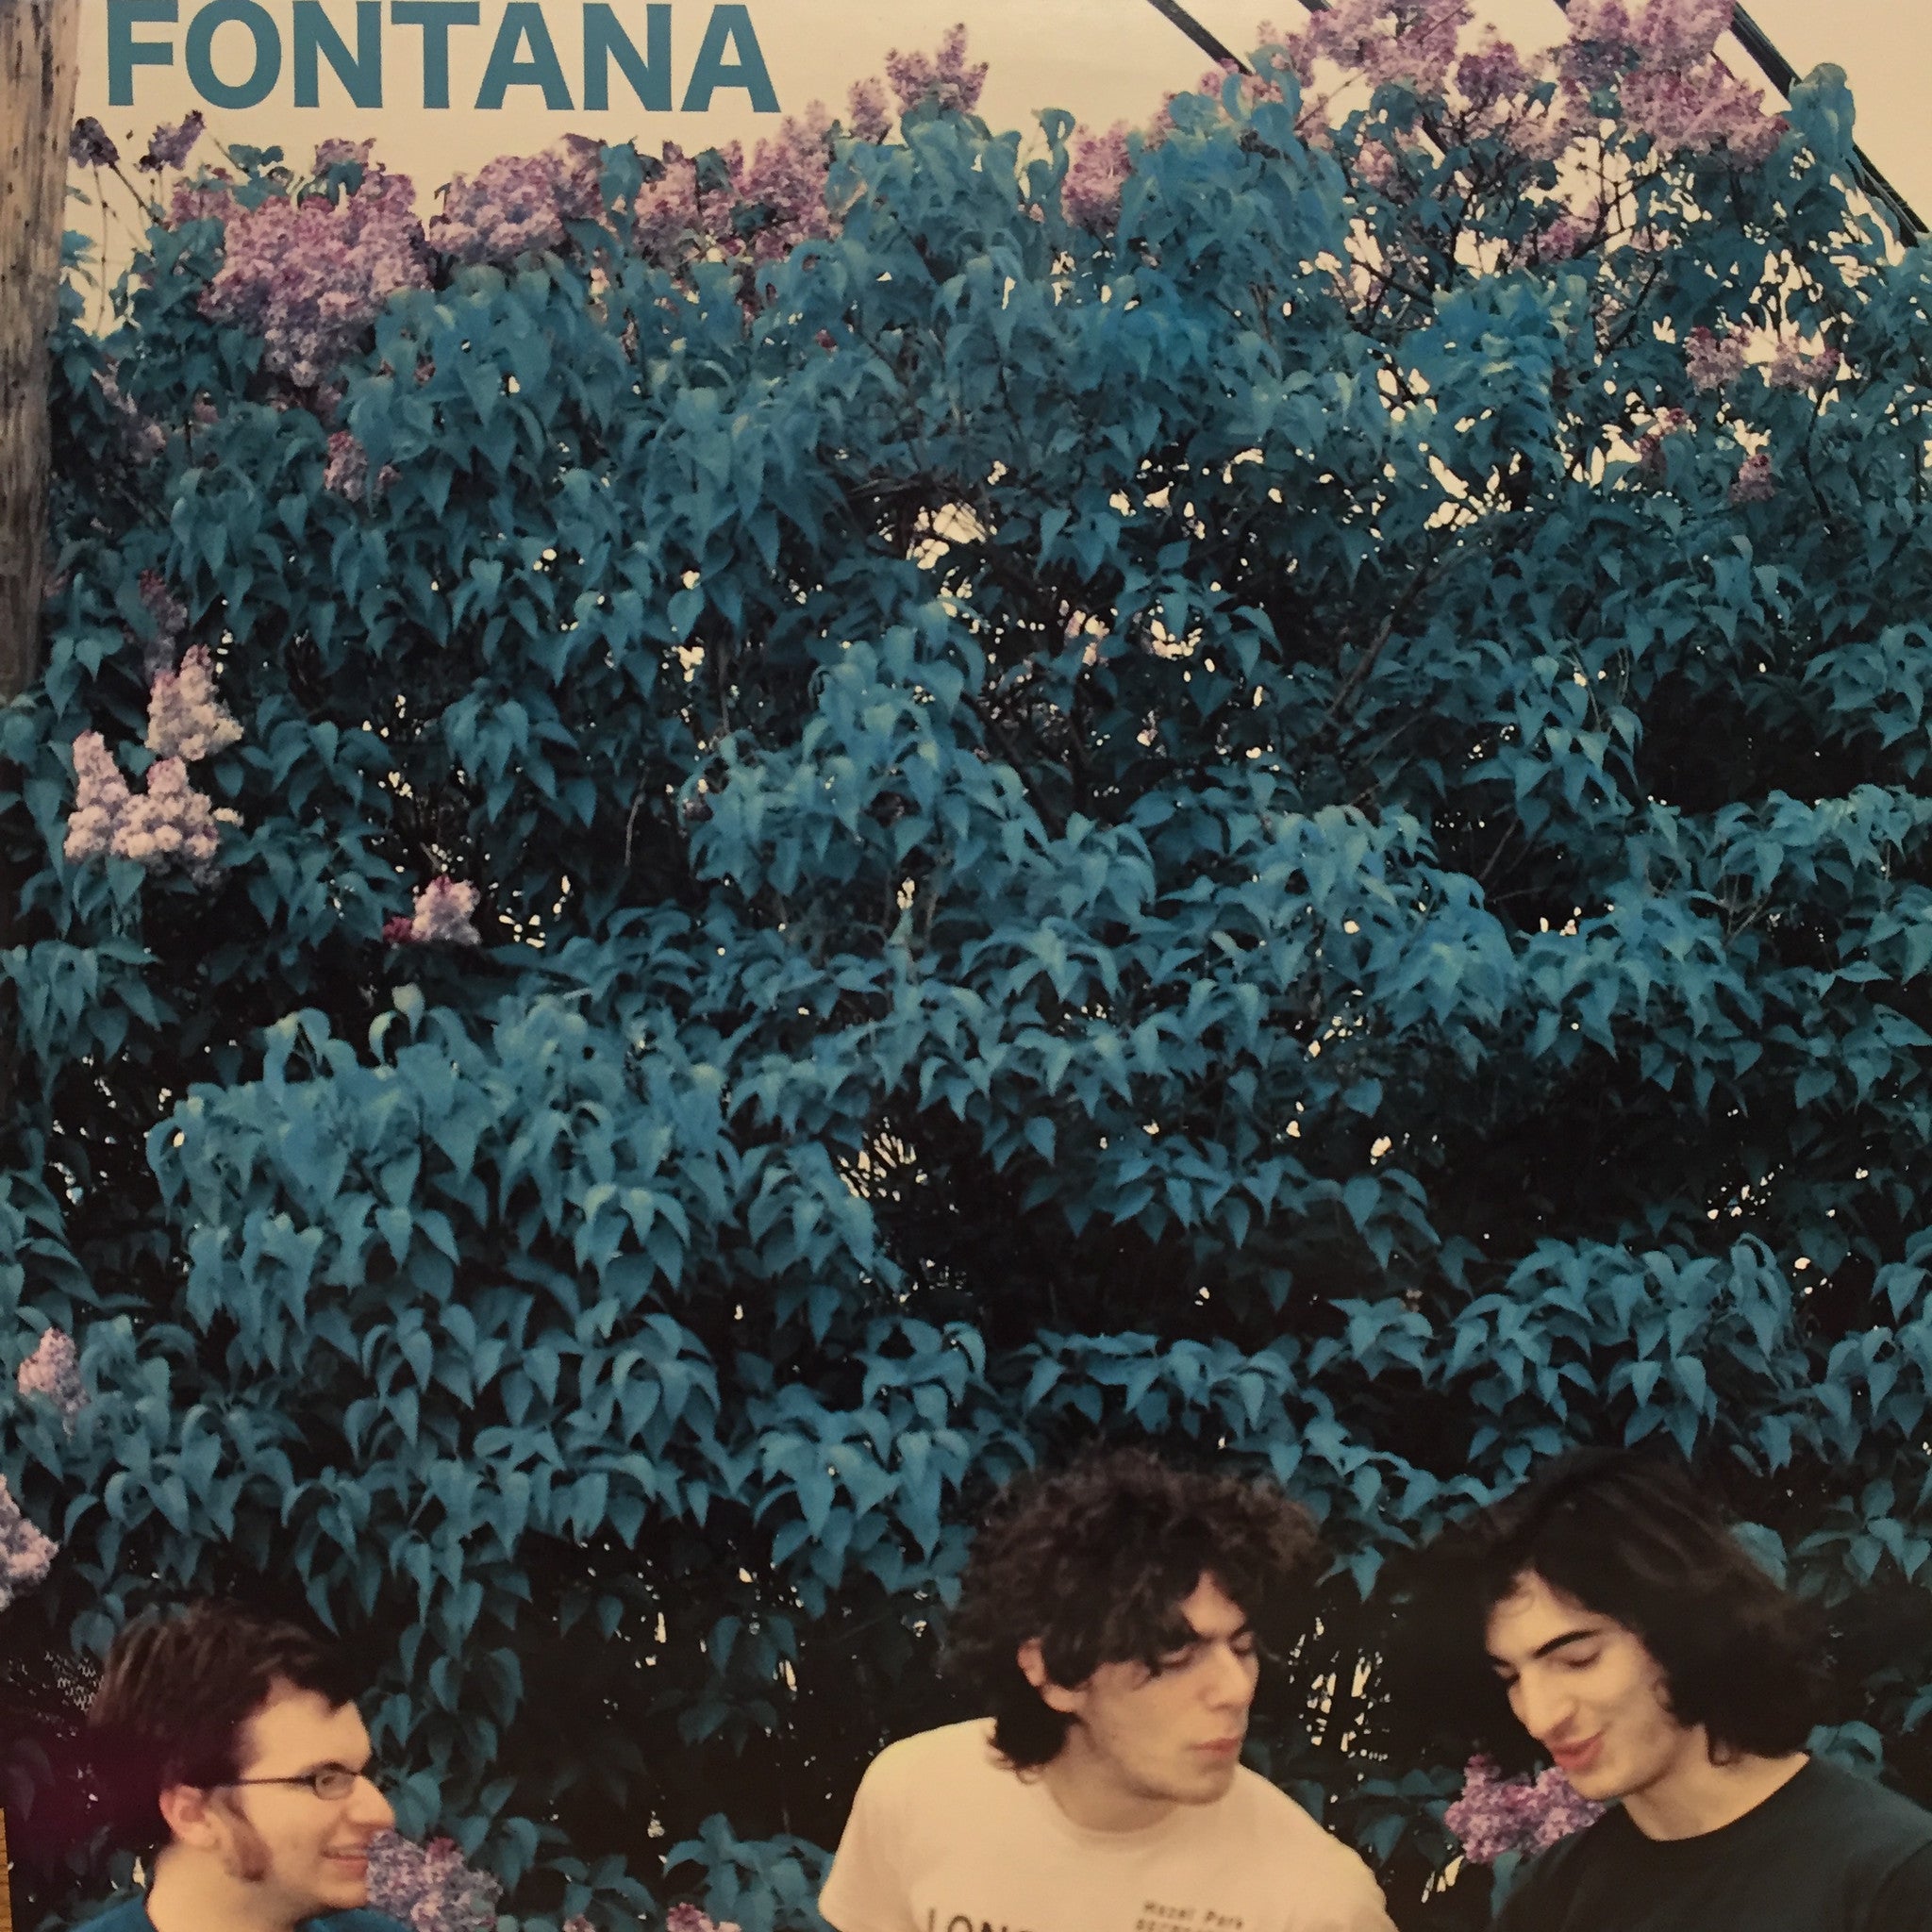 Fontana - S/T - New Vinyl Record 2009 X! Records Pressing of 500 copies - Detroit, MI Punk